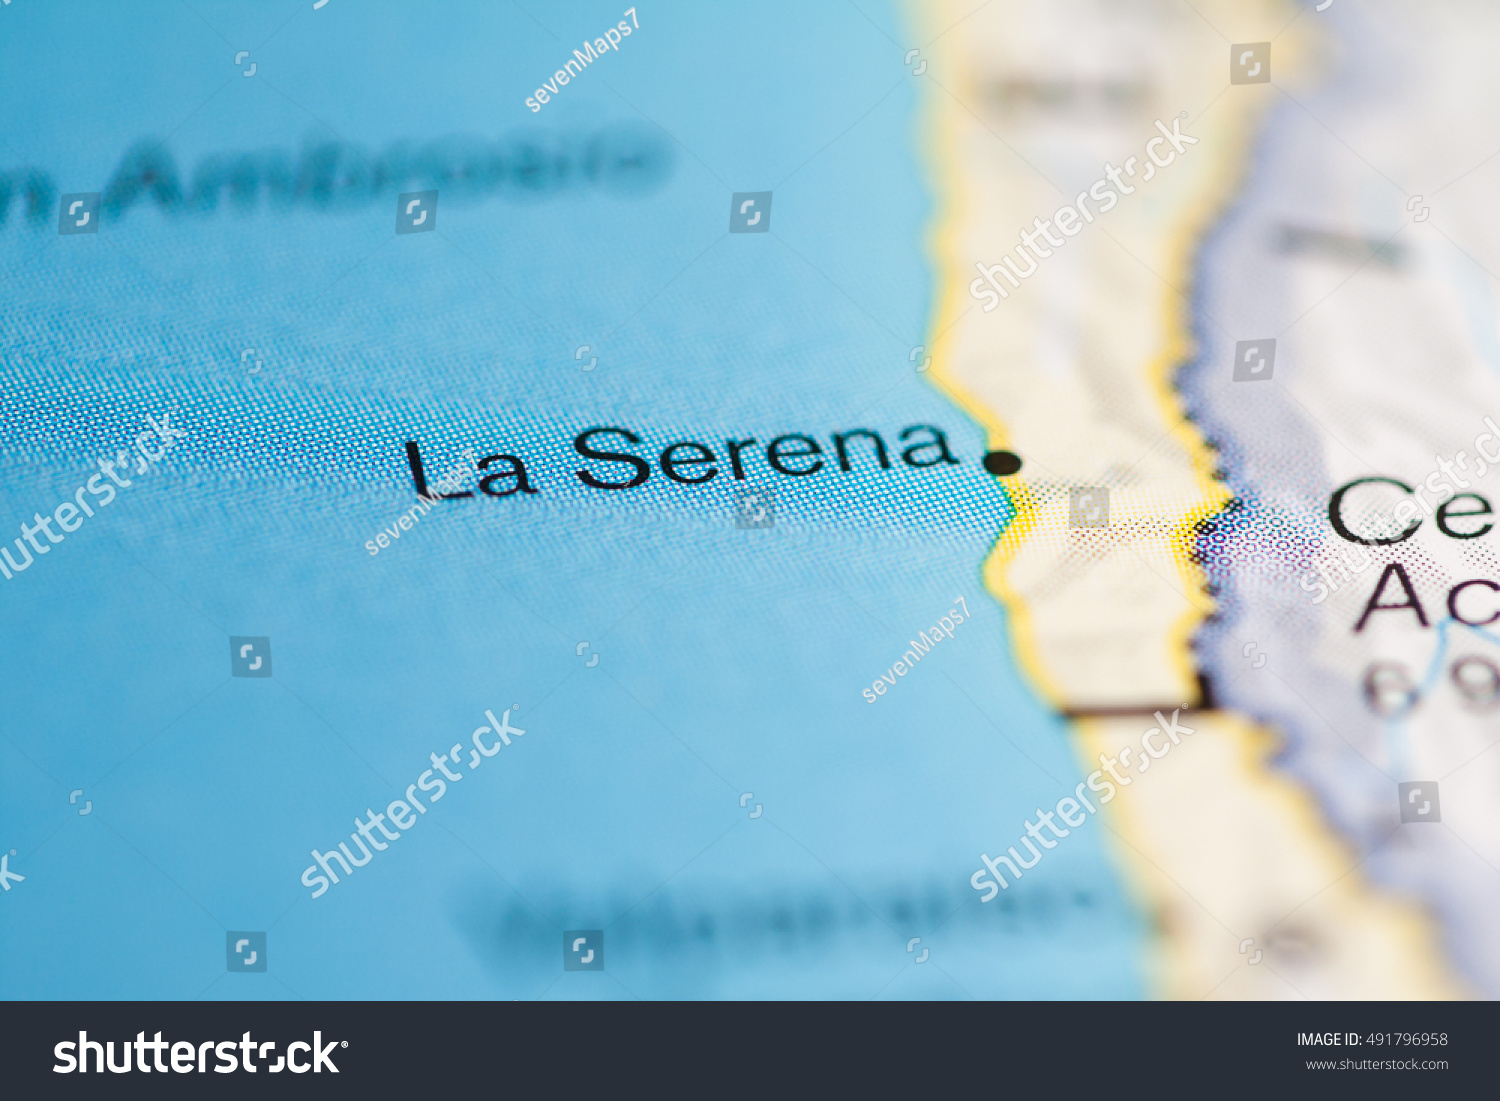 Serena south